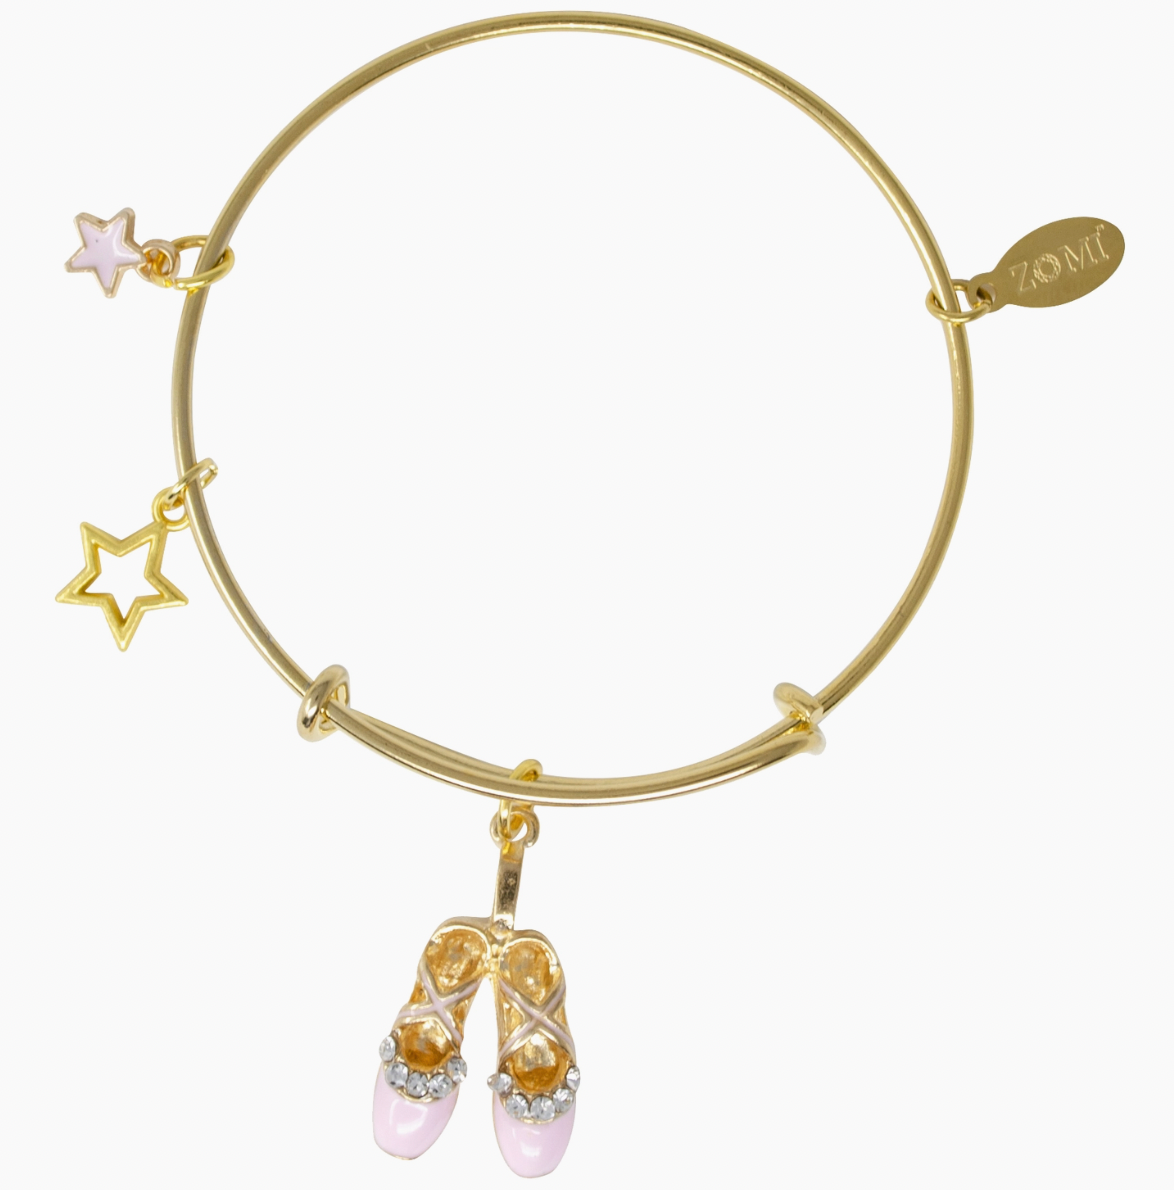 Ballet Pointe Shoes & Star Gold Bangle Bracelet